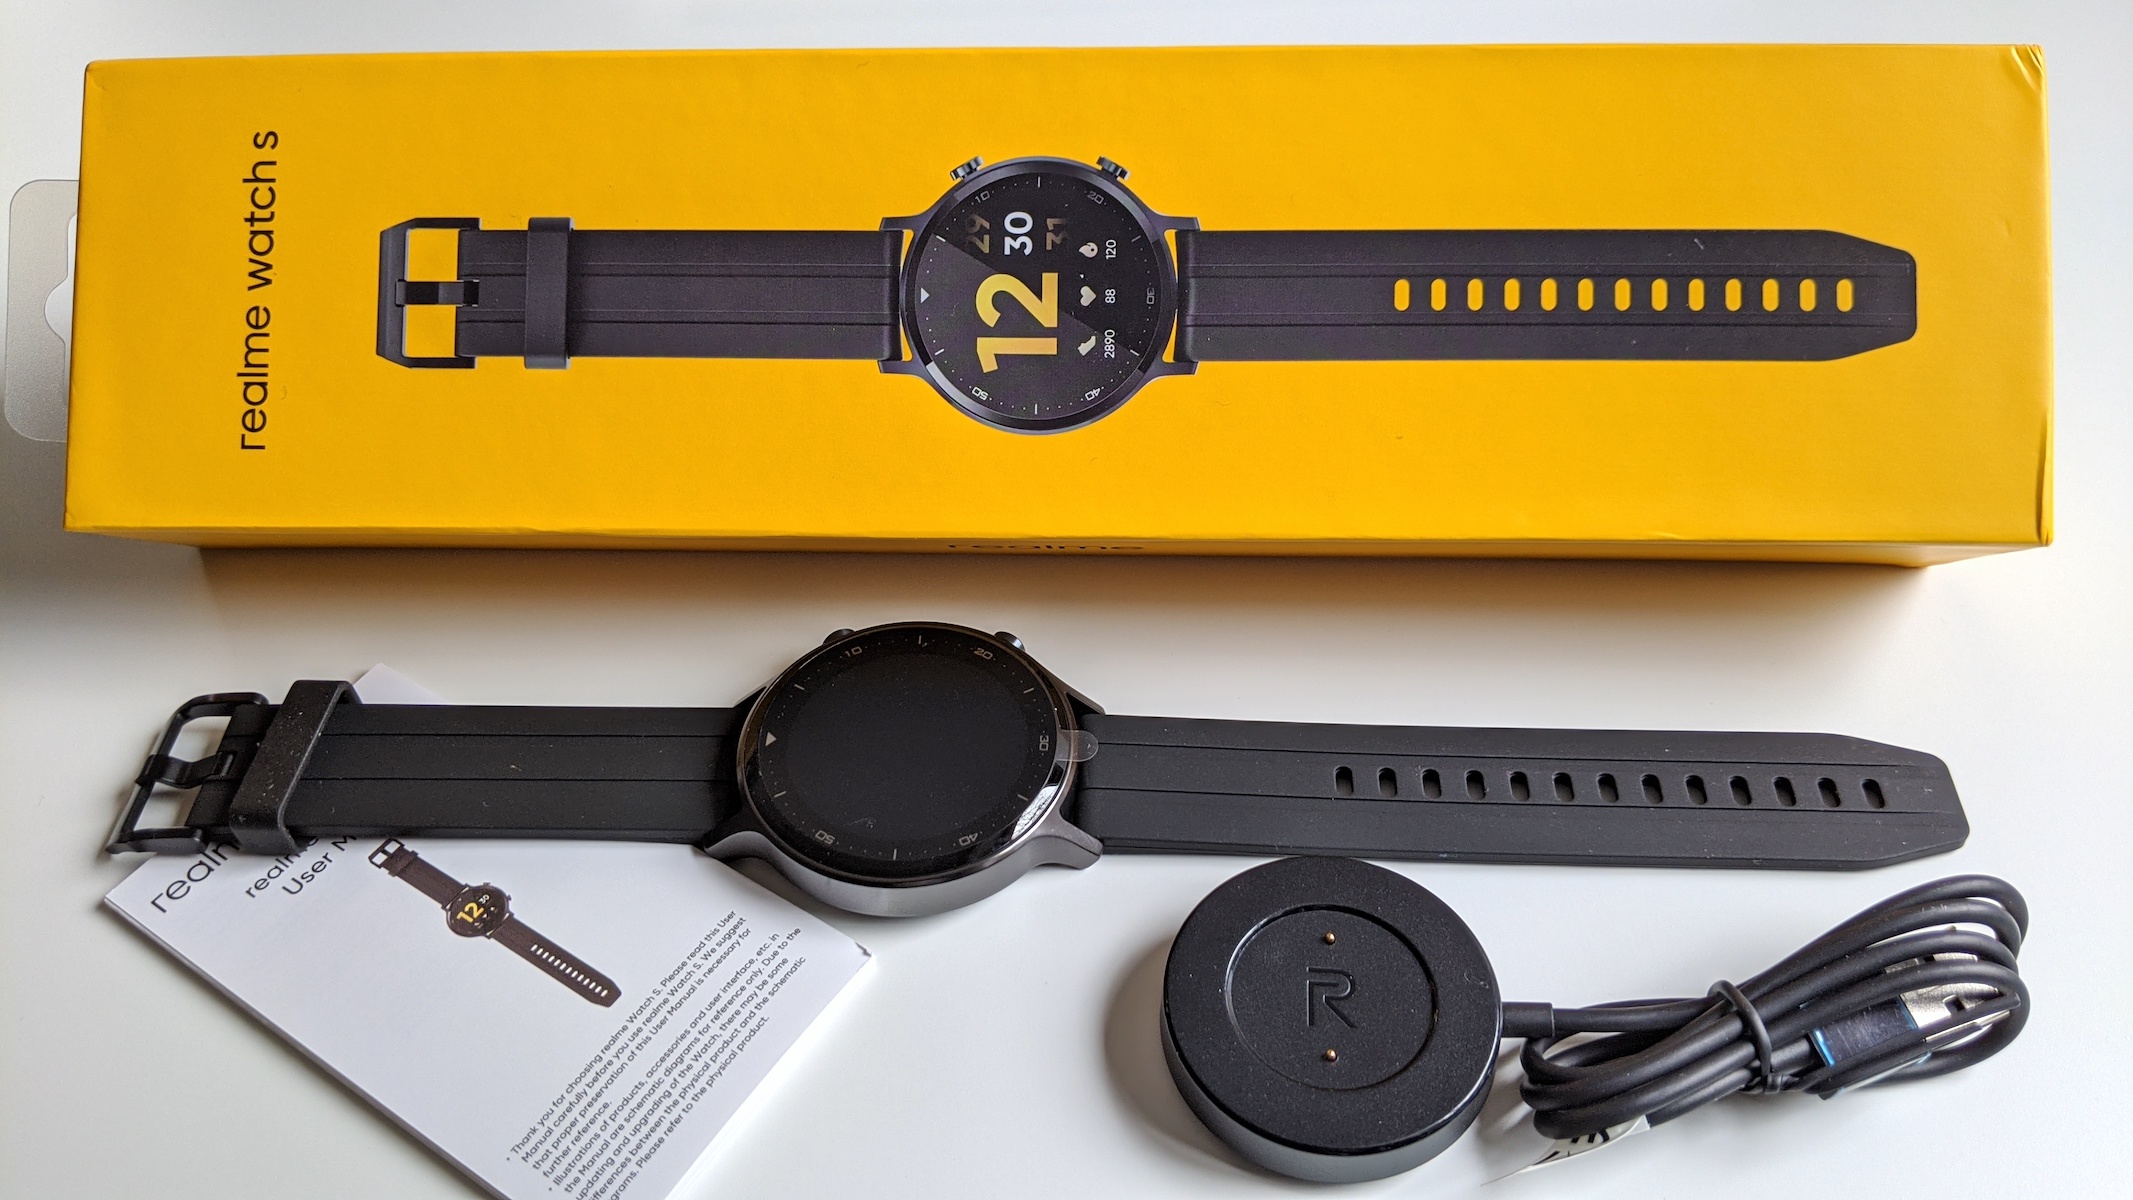 El reloj inteligente barato que merece la pena: probamos el Realme Watch S